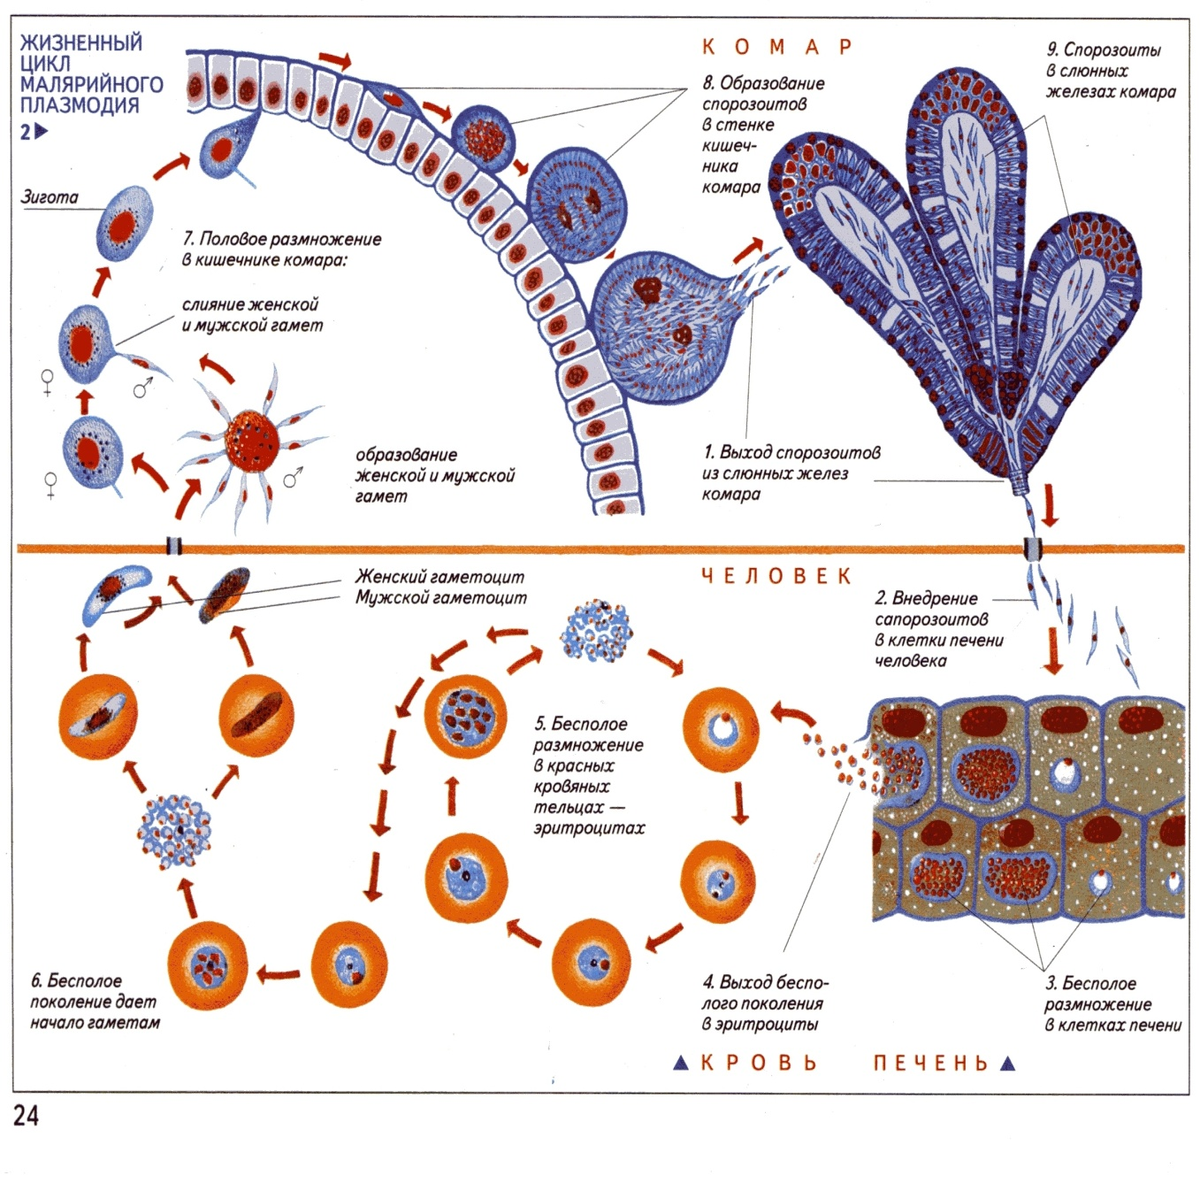 Цикл размножения малярийного плазмодия. Стадии жизненного цикла малярийного плазмодия. Жизненный цикл малярийного плазмодия схема. Жизненный цикл малярийного плазмодия биология.